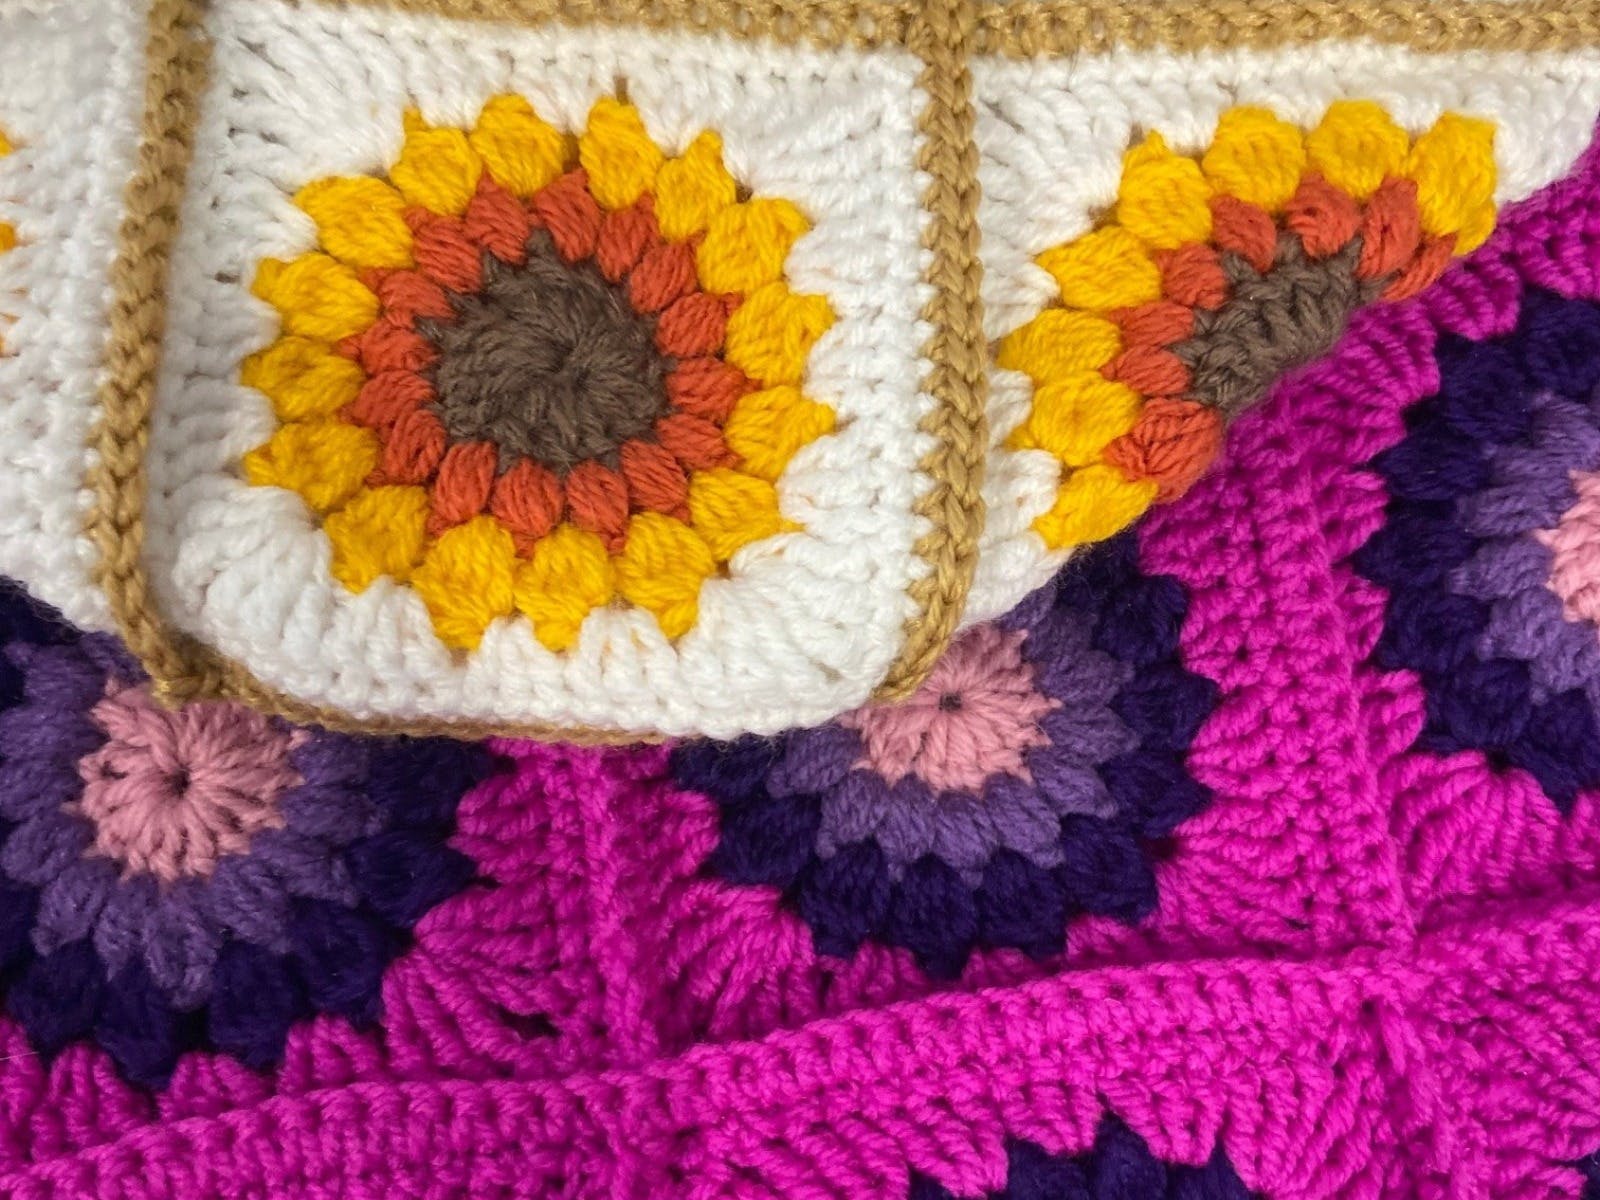 Crochet Class: Sunflower Granny Square, Tamborine Mountain - What's On  Scenic Rim - An initiative of Scenic Rim Regional Council